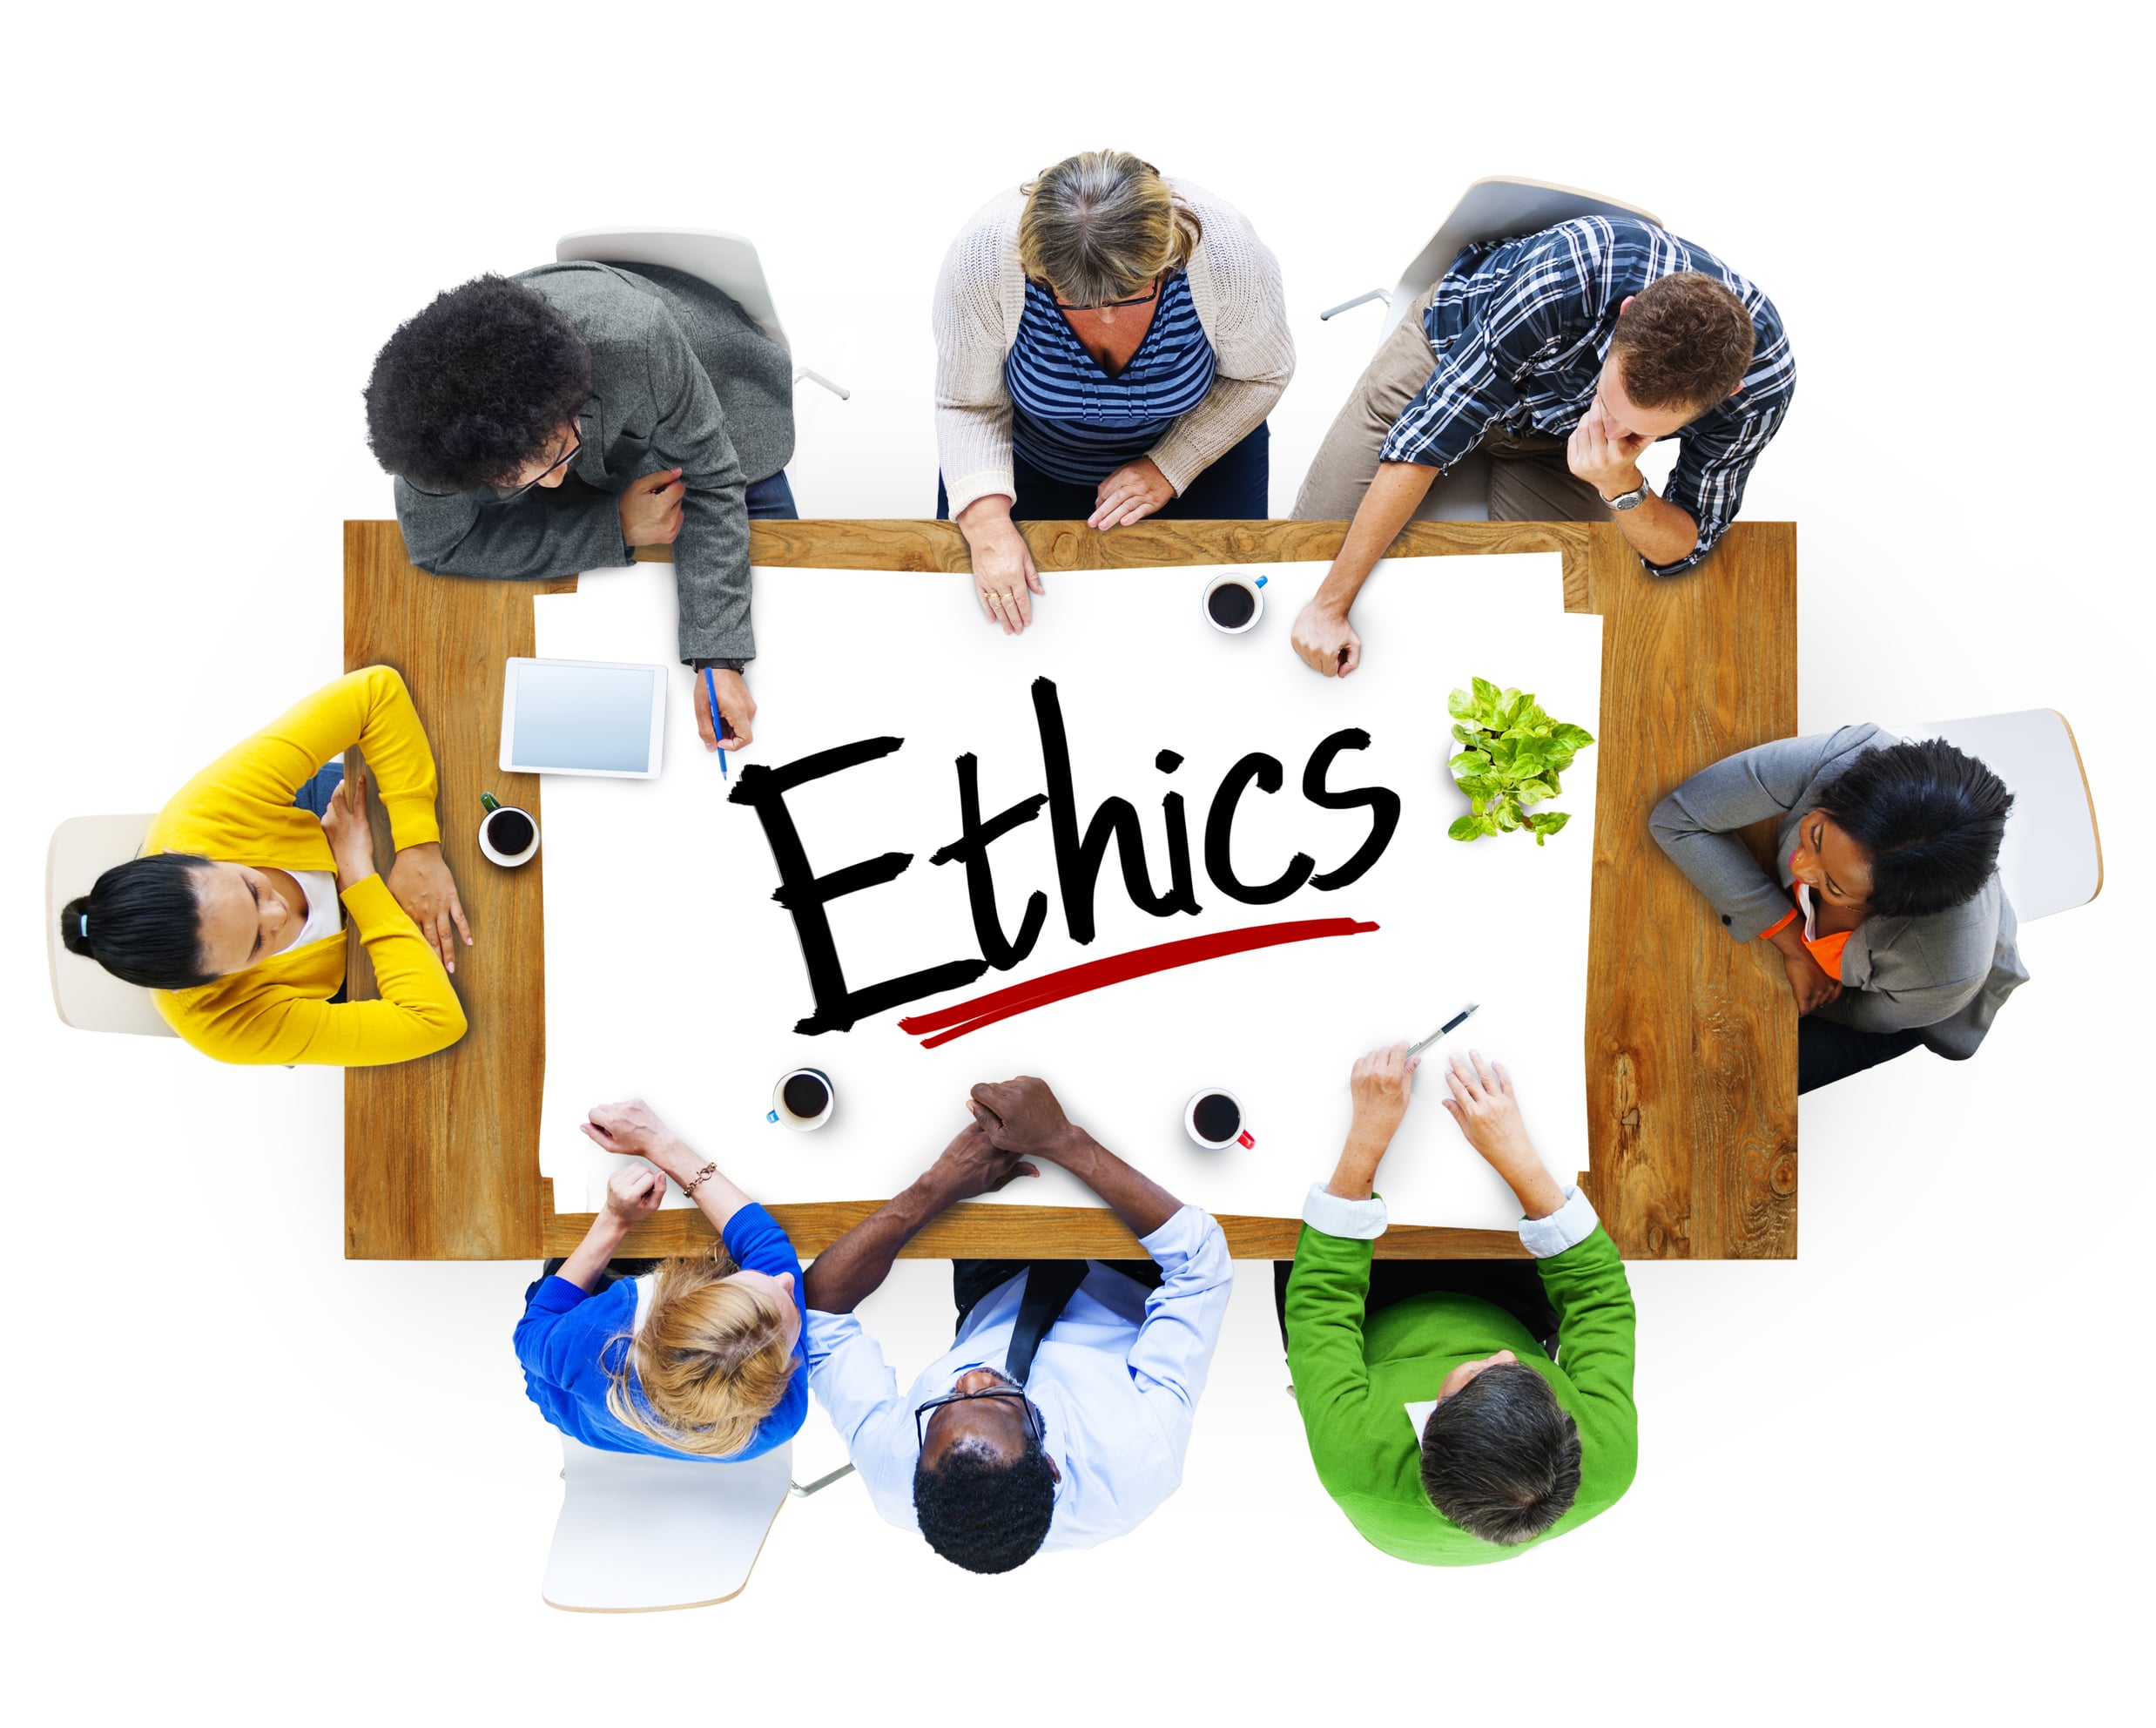 La ética en el trabajo